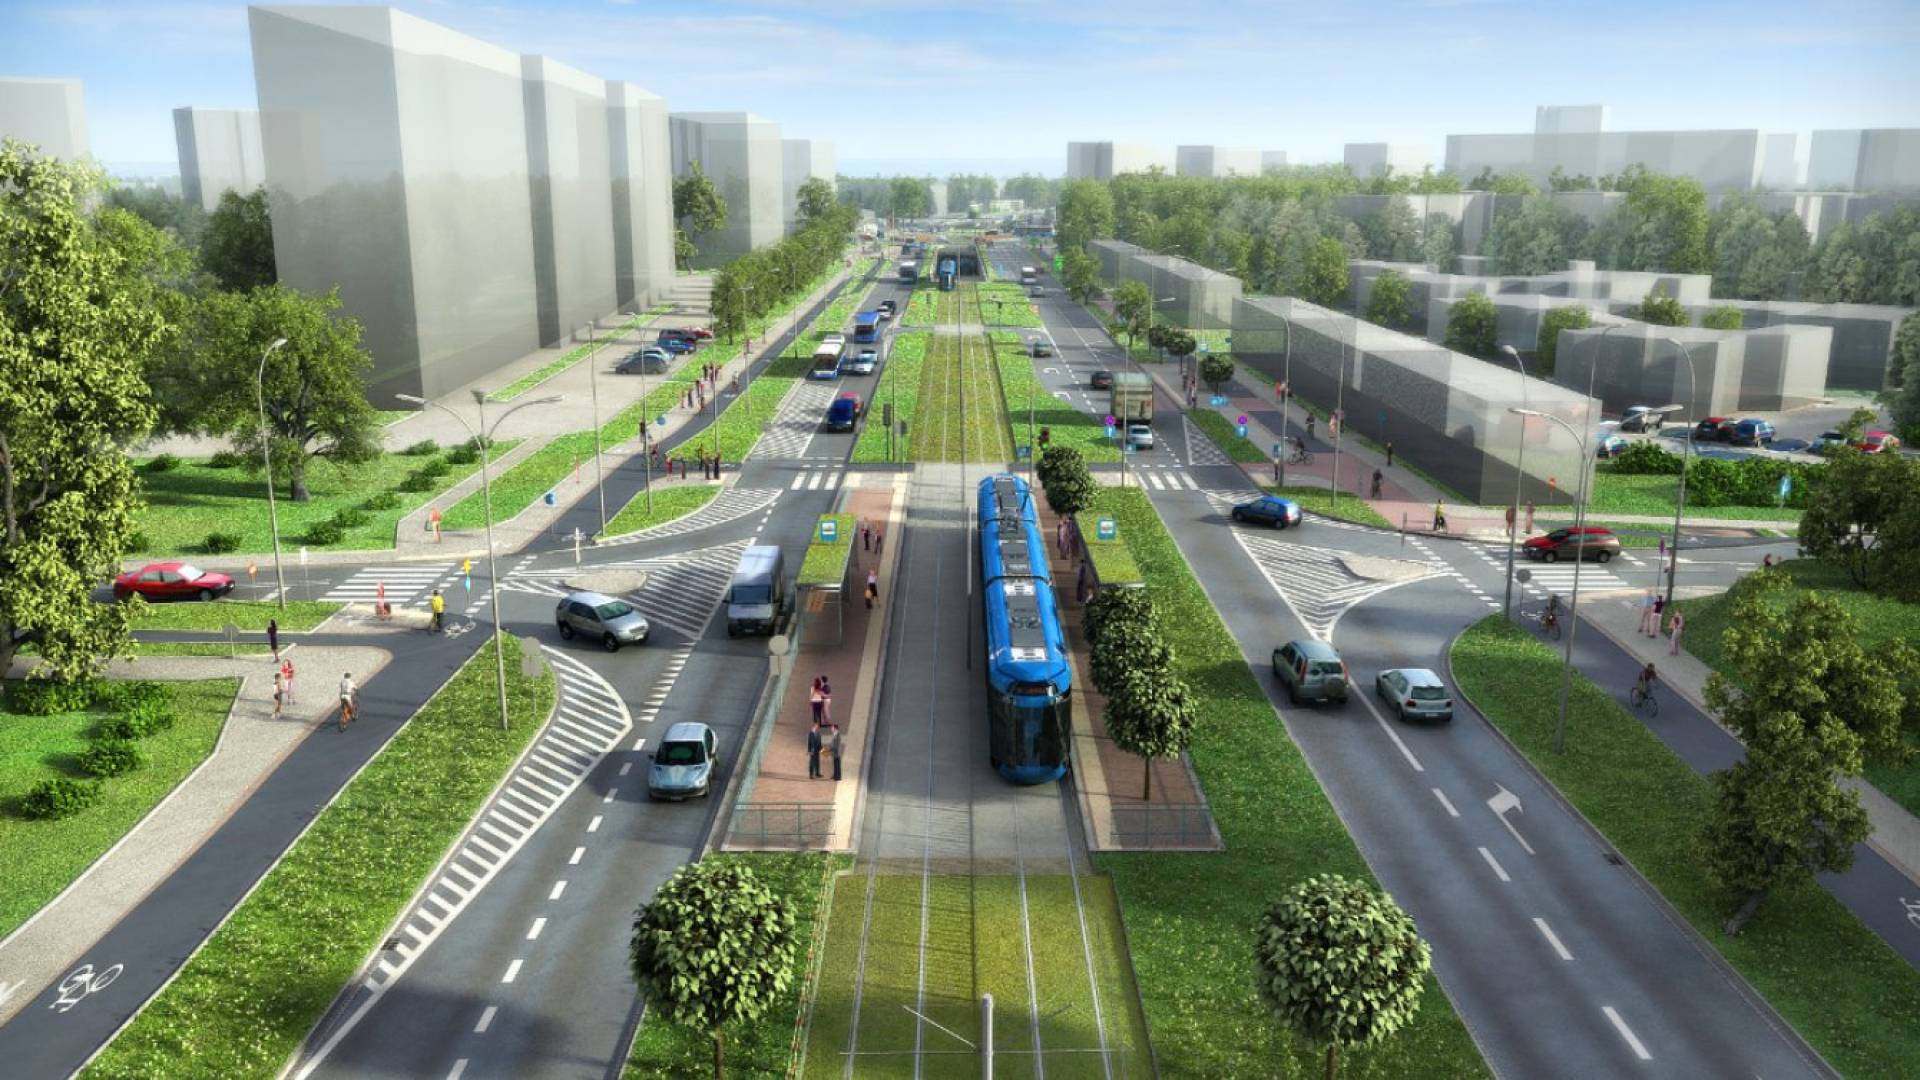 Jest zgoda na rozpoczęcie budowy linii tramwajowej do Mistrzejowic. "Uratowano 200 drzew"